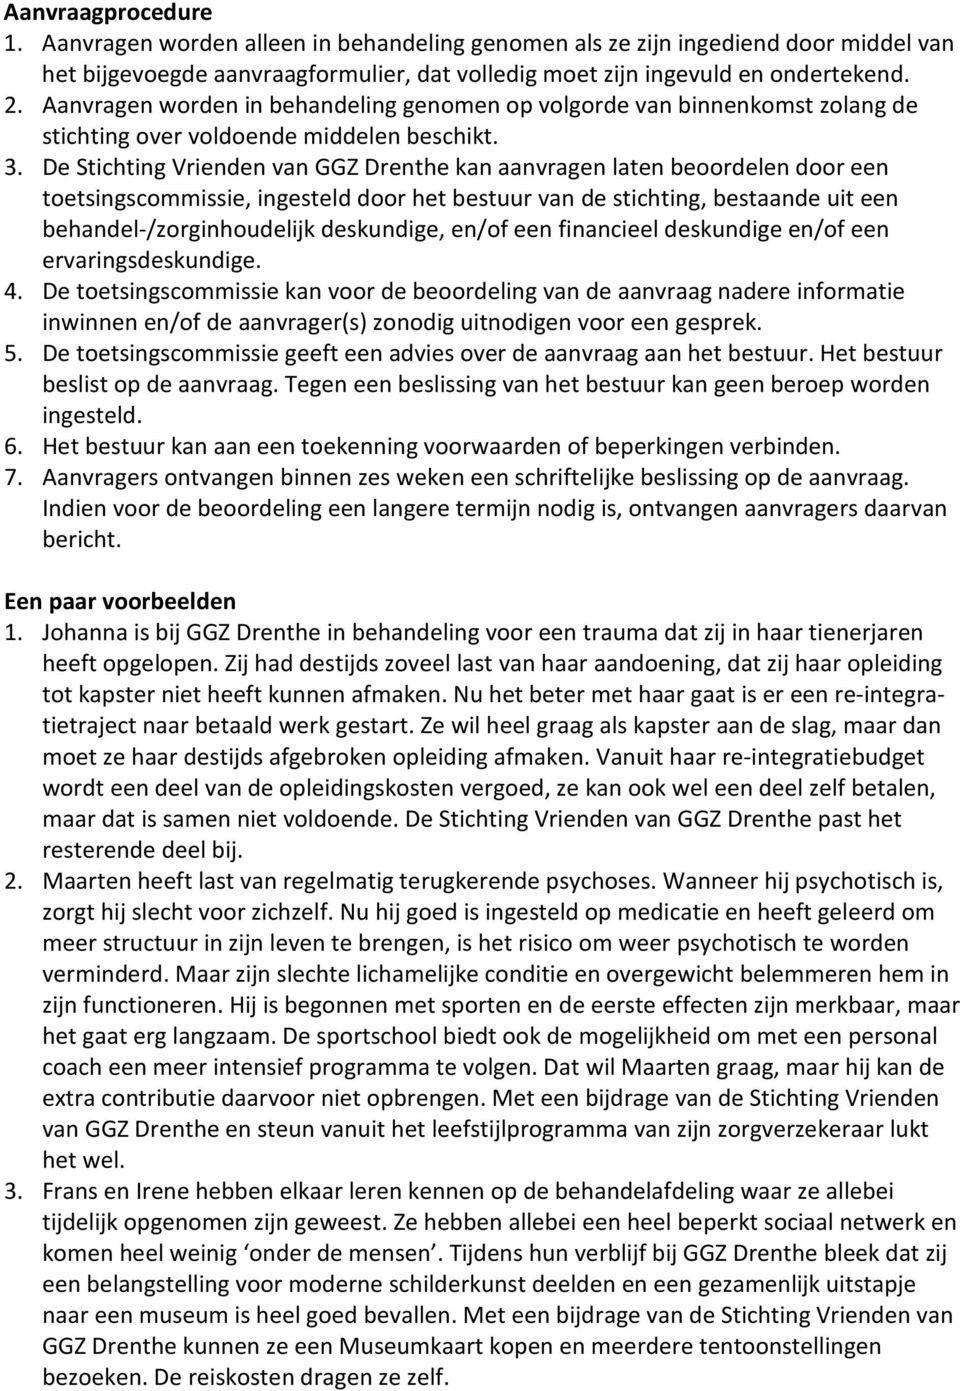 De Stichting Vrienden van GGZ Drenthe kan aanvragen laten beoordelen door een toetsingscommissie, ingesteld door het bestuur van de stichting, bestaande uit een behandel-/zorginhoudelijk deskundige,